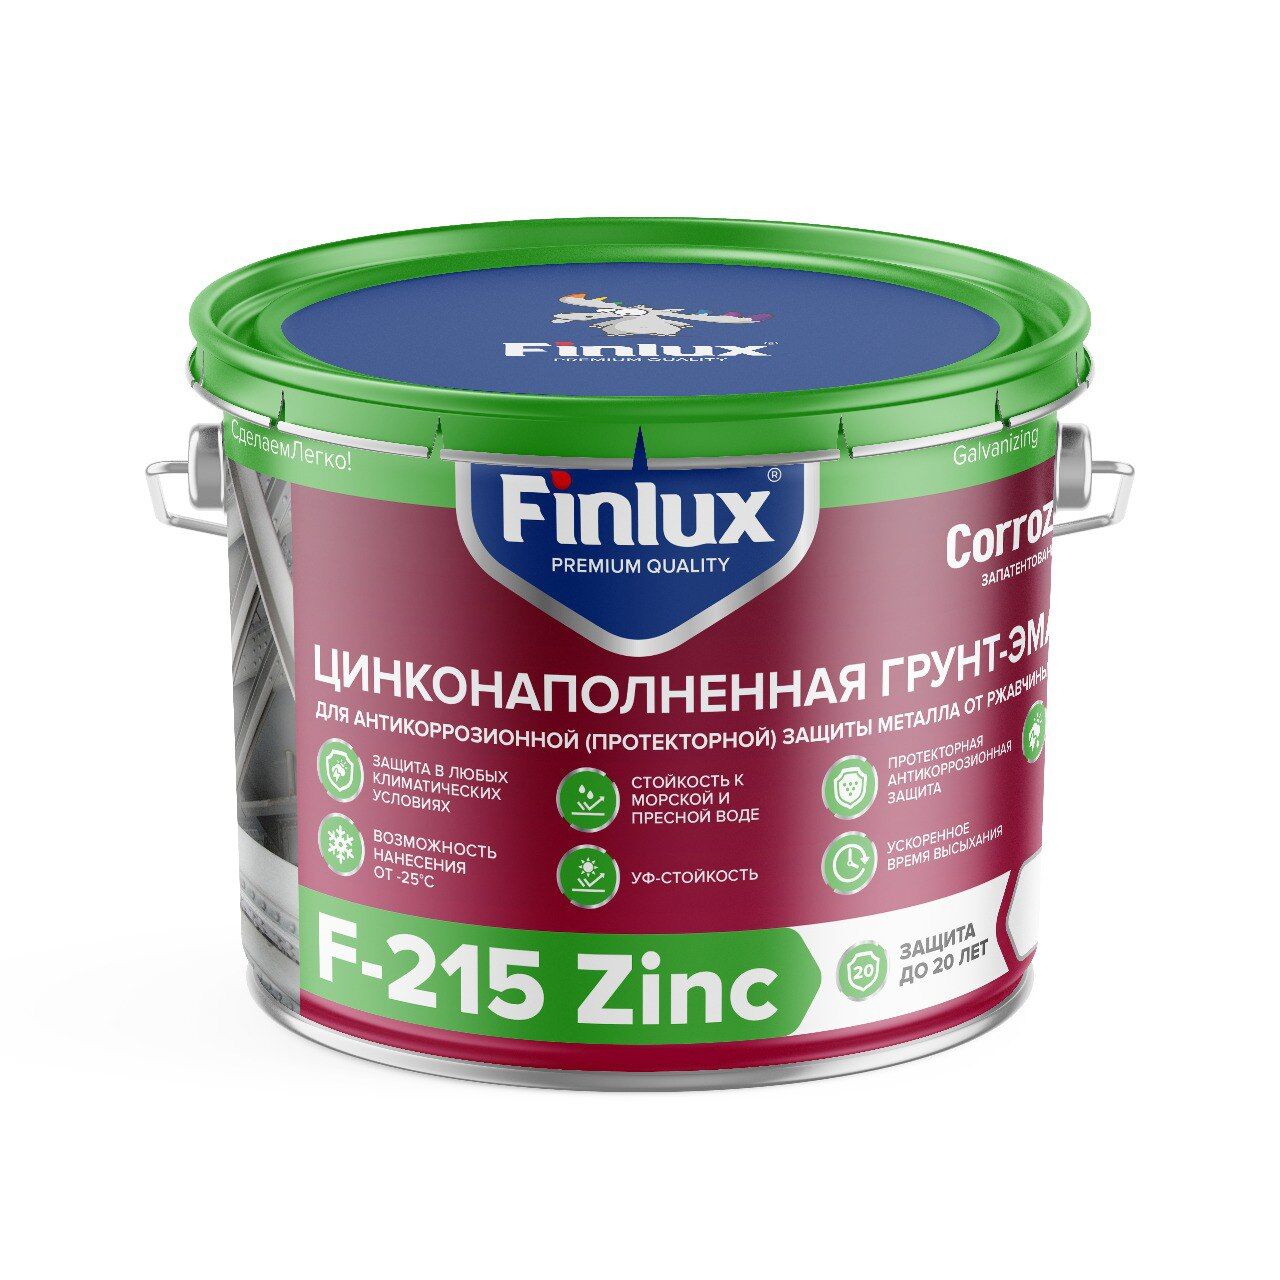 Финишная цинковая краска для антикоррозионной защиты металла от ржавчины Finlux F-215 Zinc CorrozoStop 10 кг